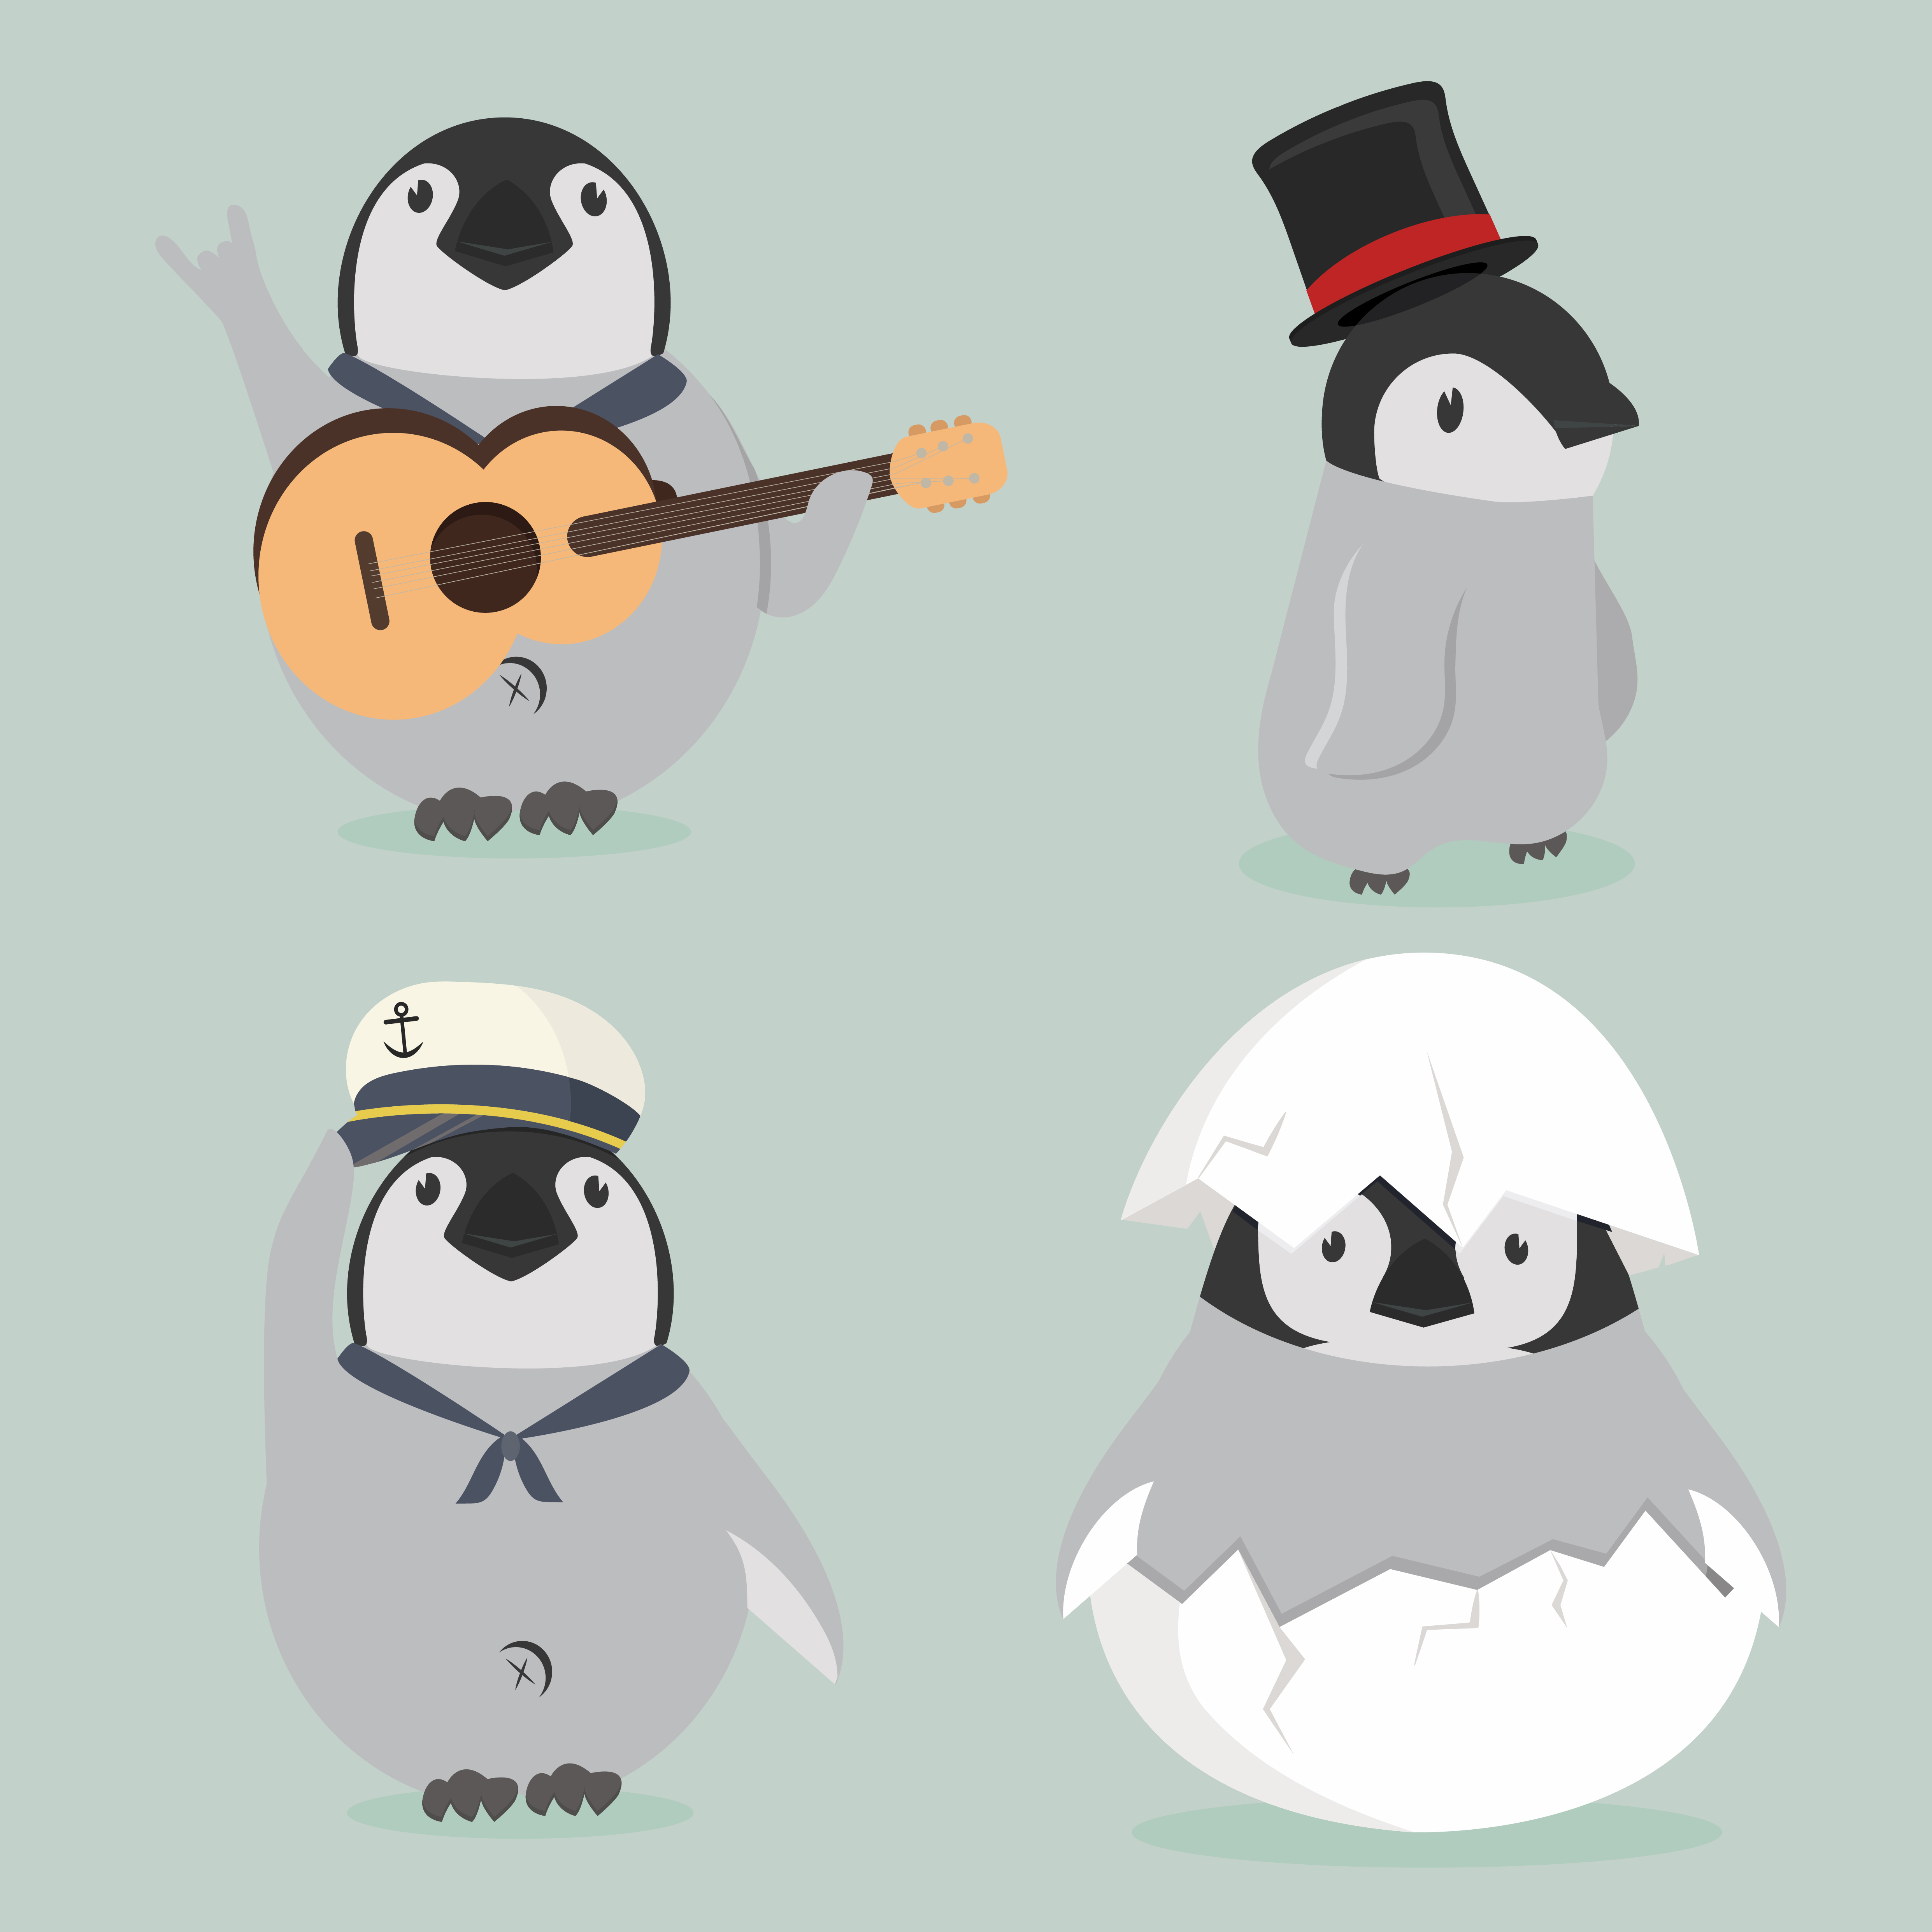 Download baby penguin characters set - Download Free Vectors ...